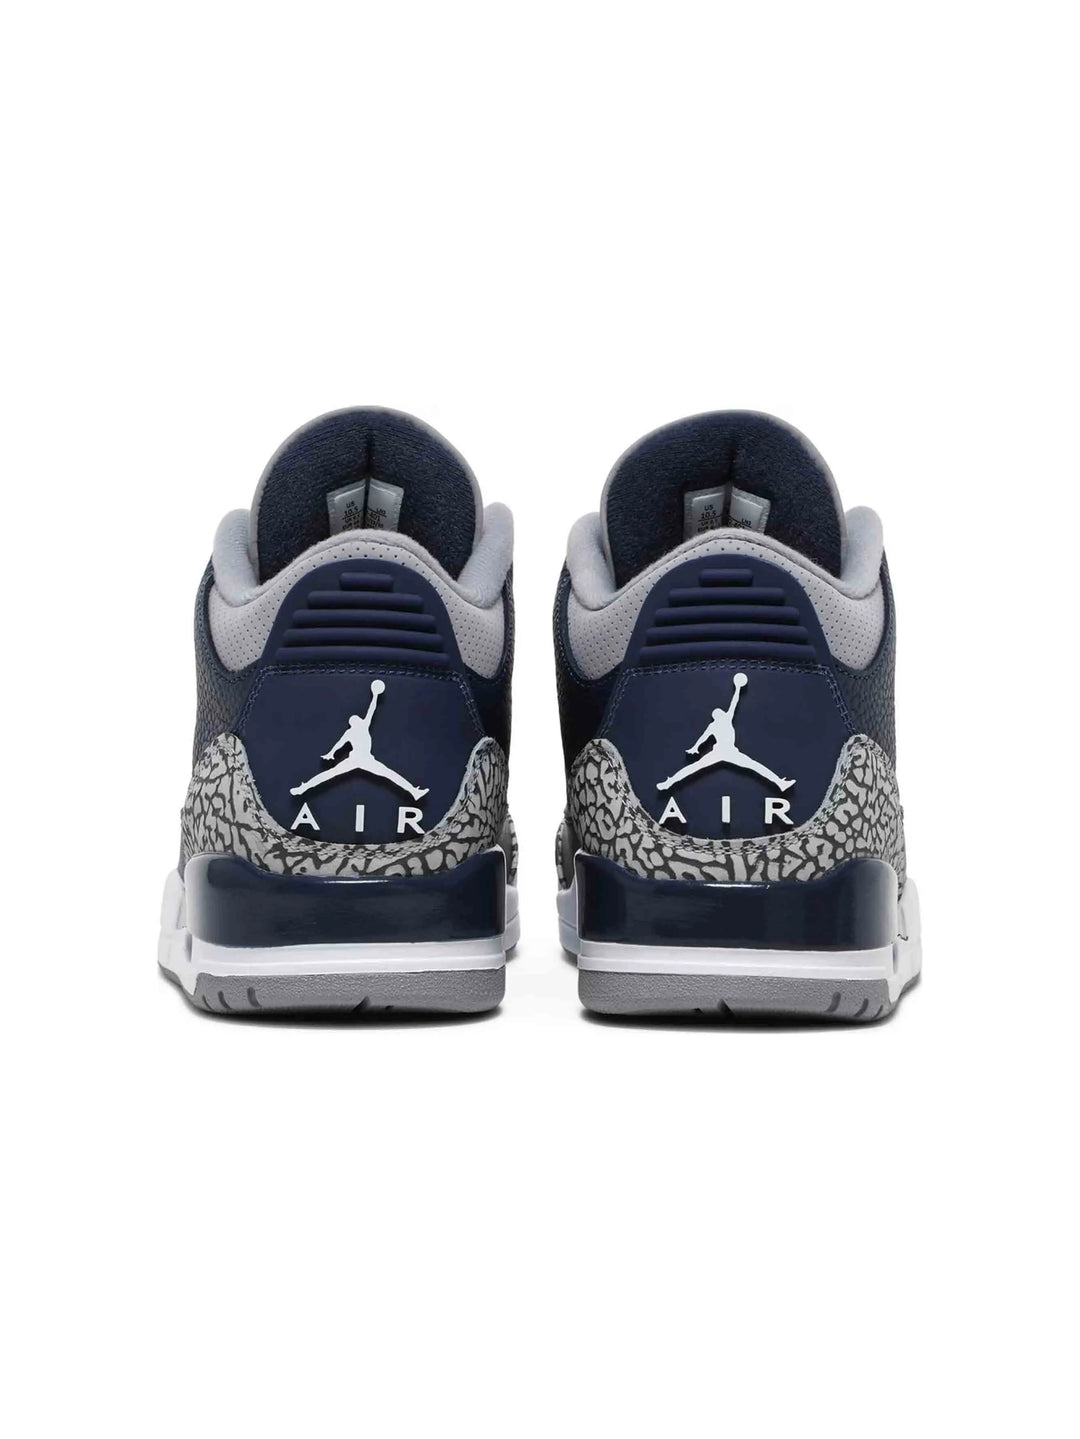 Nike Air Jordan 3 Retro Georgetown (2021) Prior